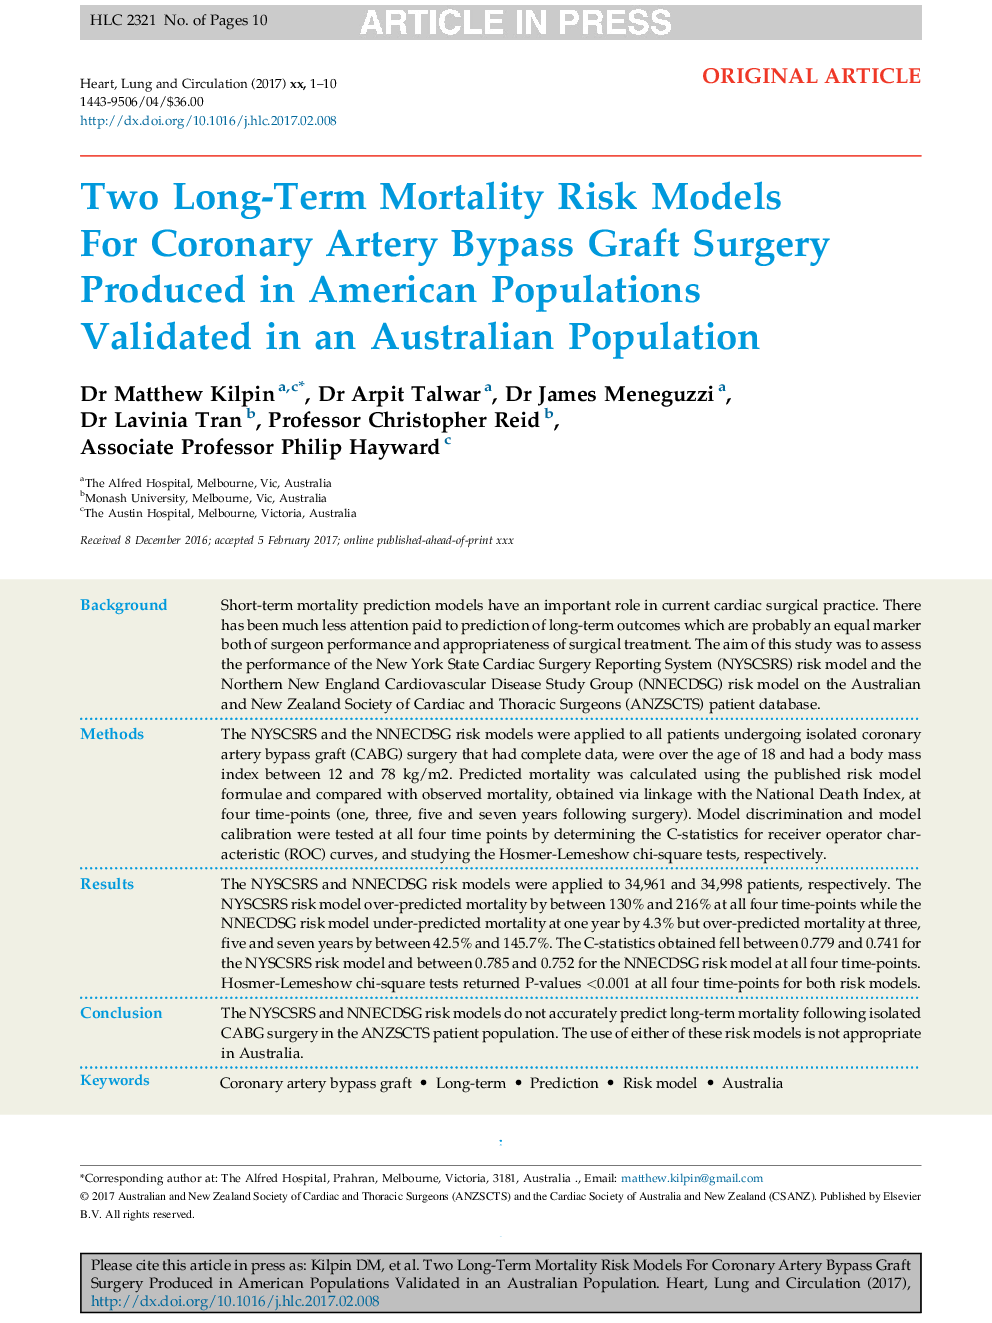 دو مدل ریسک مرگ و میر درازمدت برای جراحی پیوند عروق کرونر تولید شده در جمعیت آمریکایی که در جمعیت استرالیا اعتبار دارد 